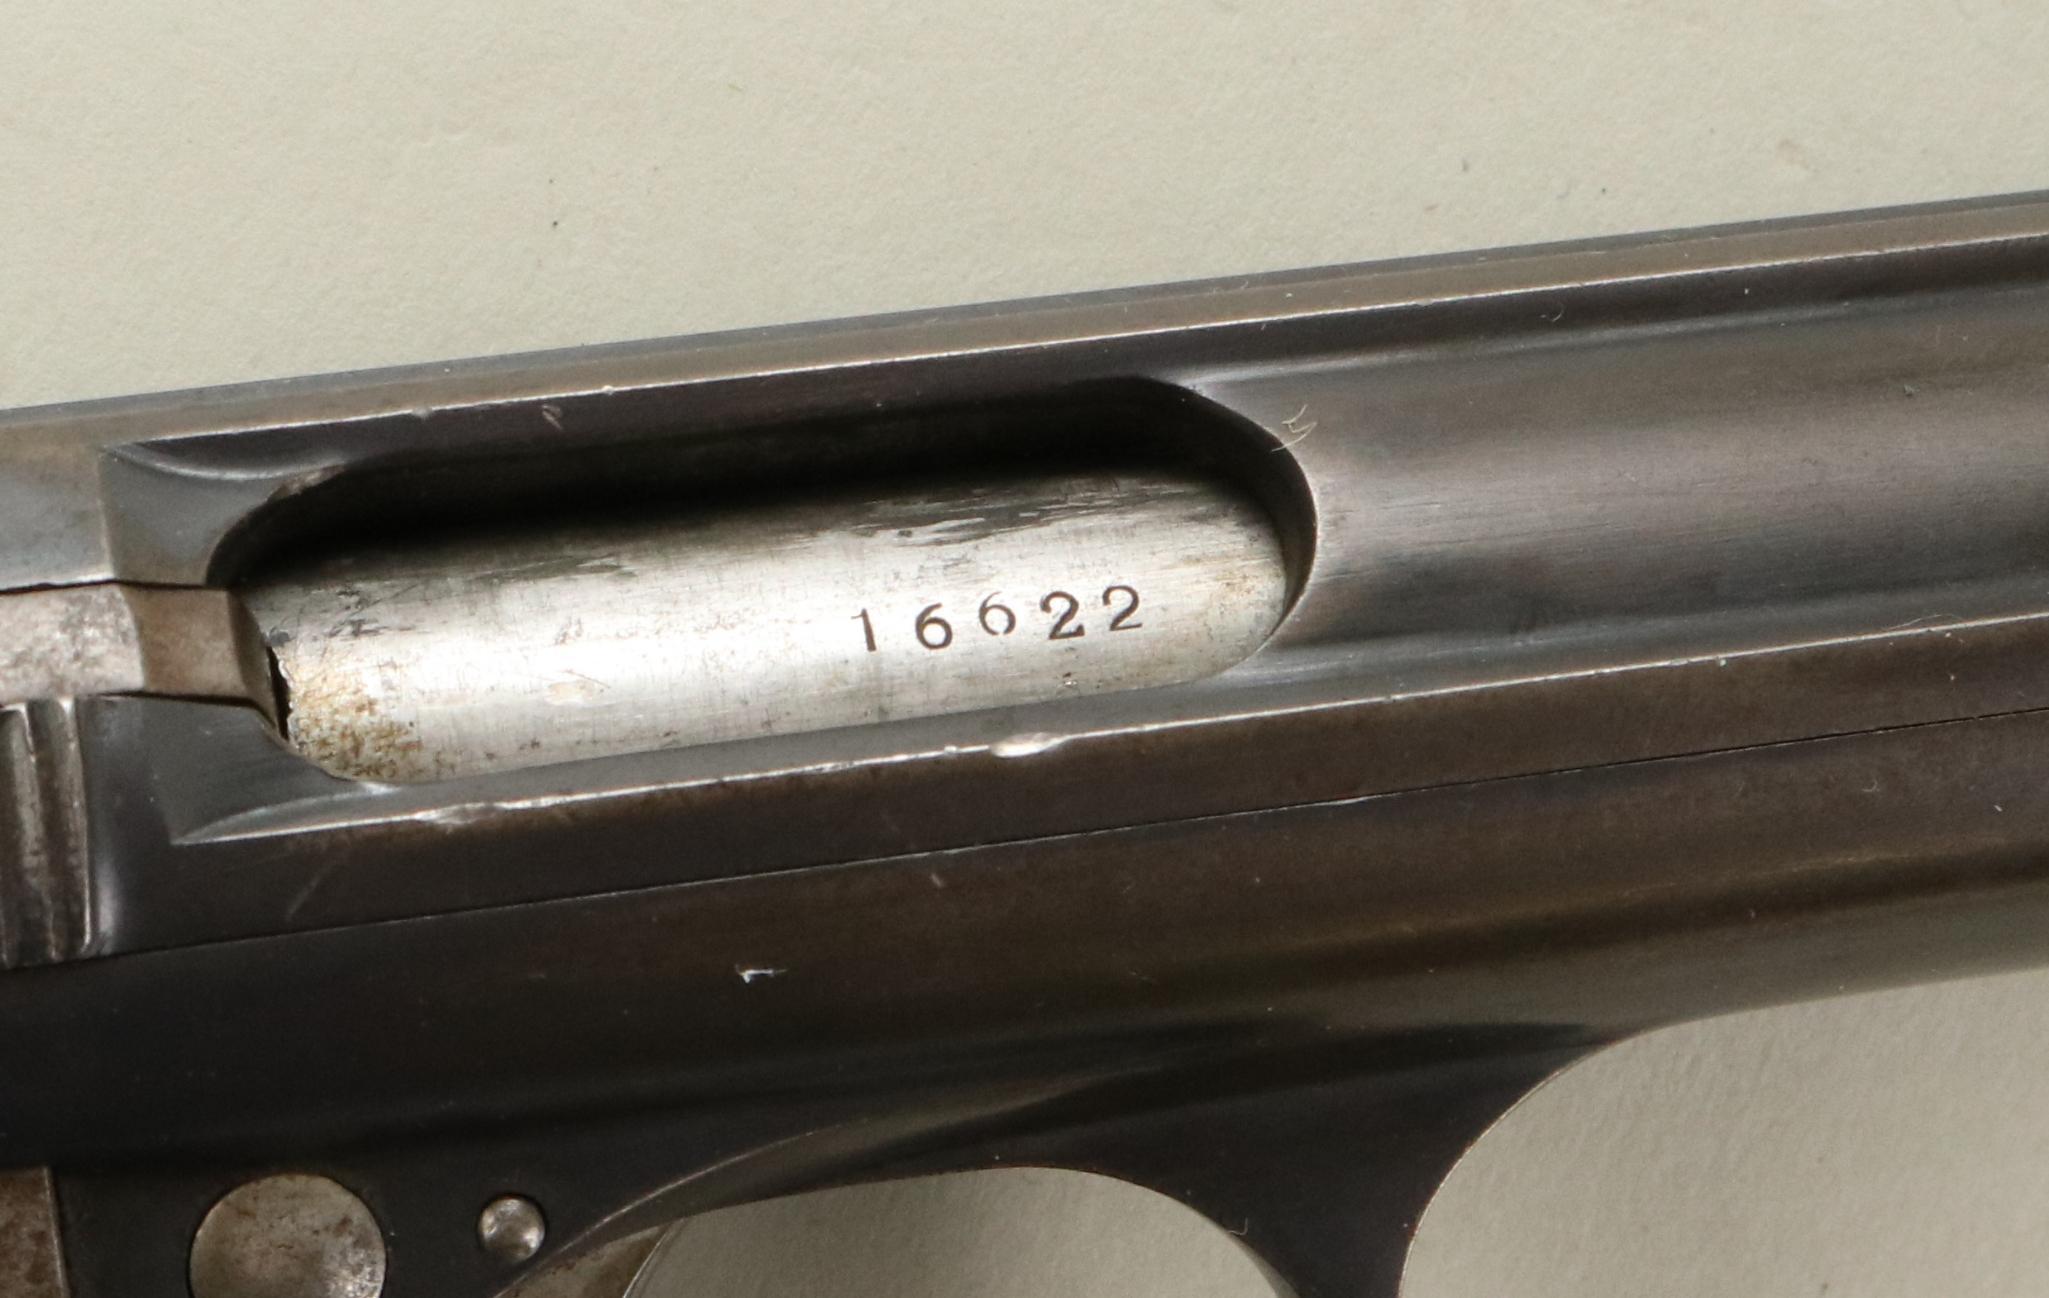 Astra Model 400/1921 semi-automatic pistol.